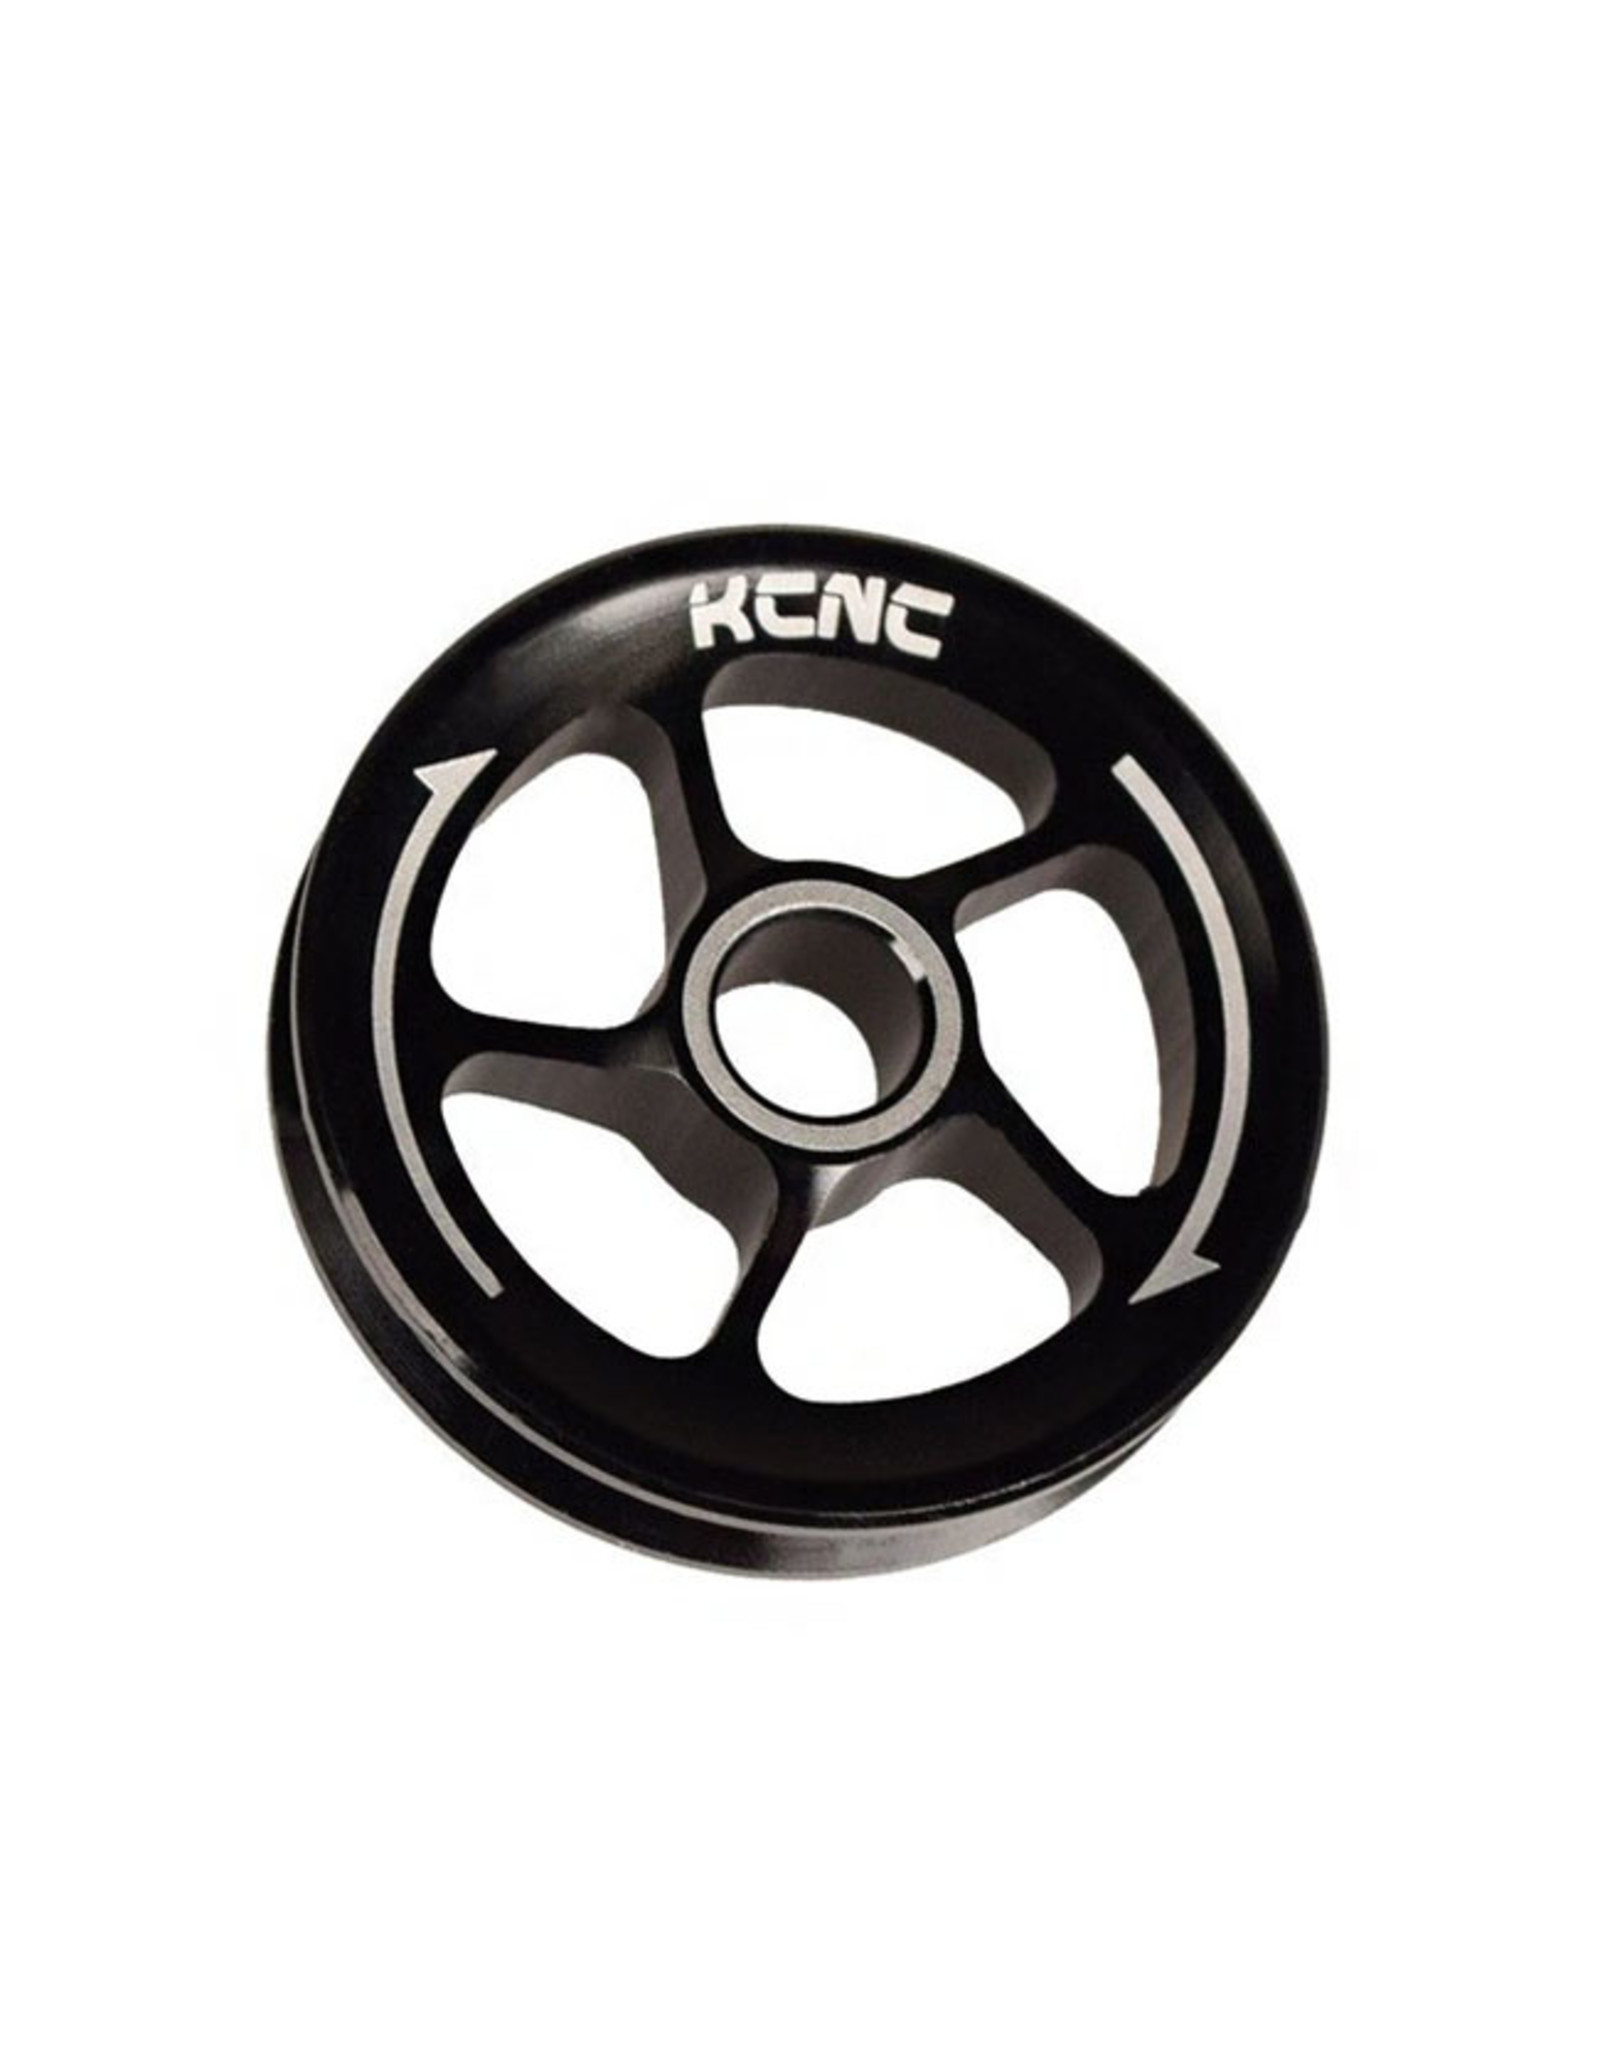 KCNC KCNC SRAM Derailleur Cable Pulley